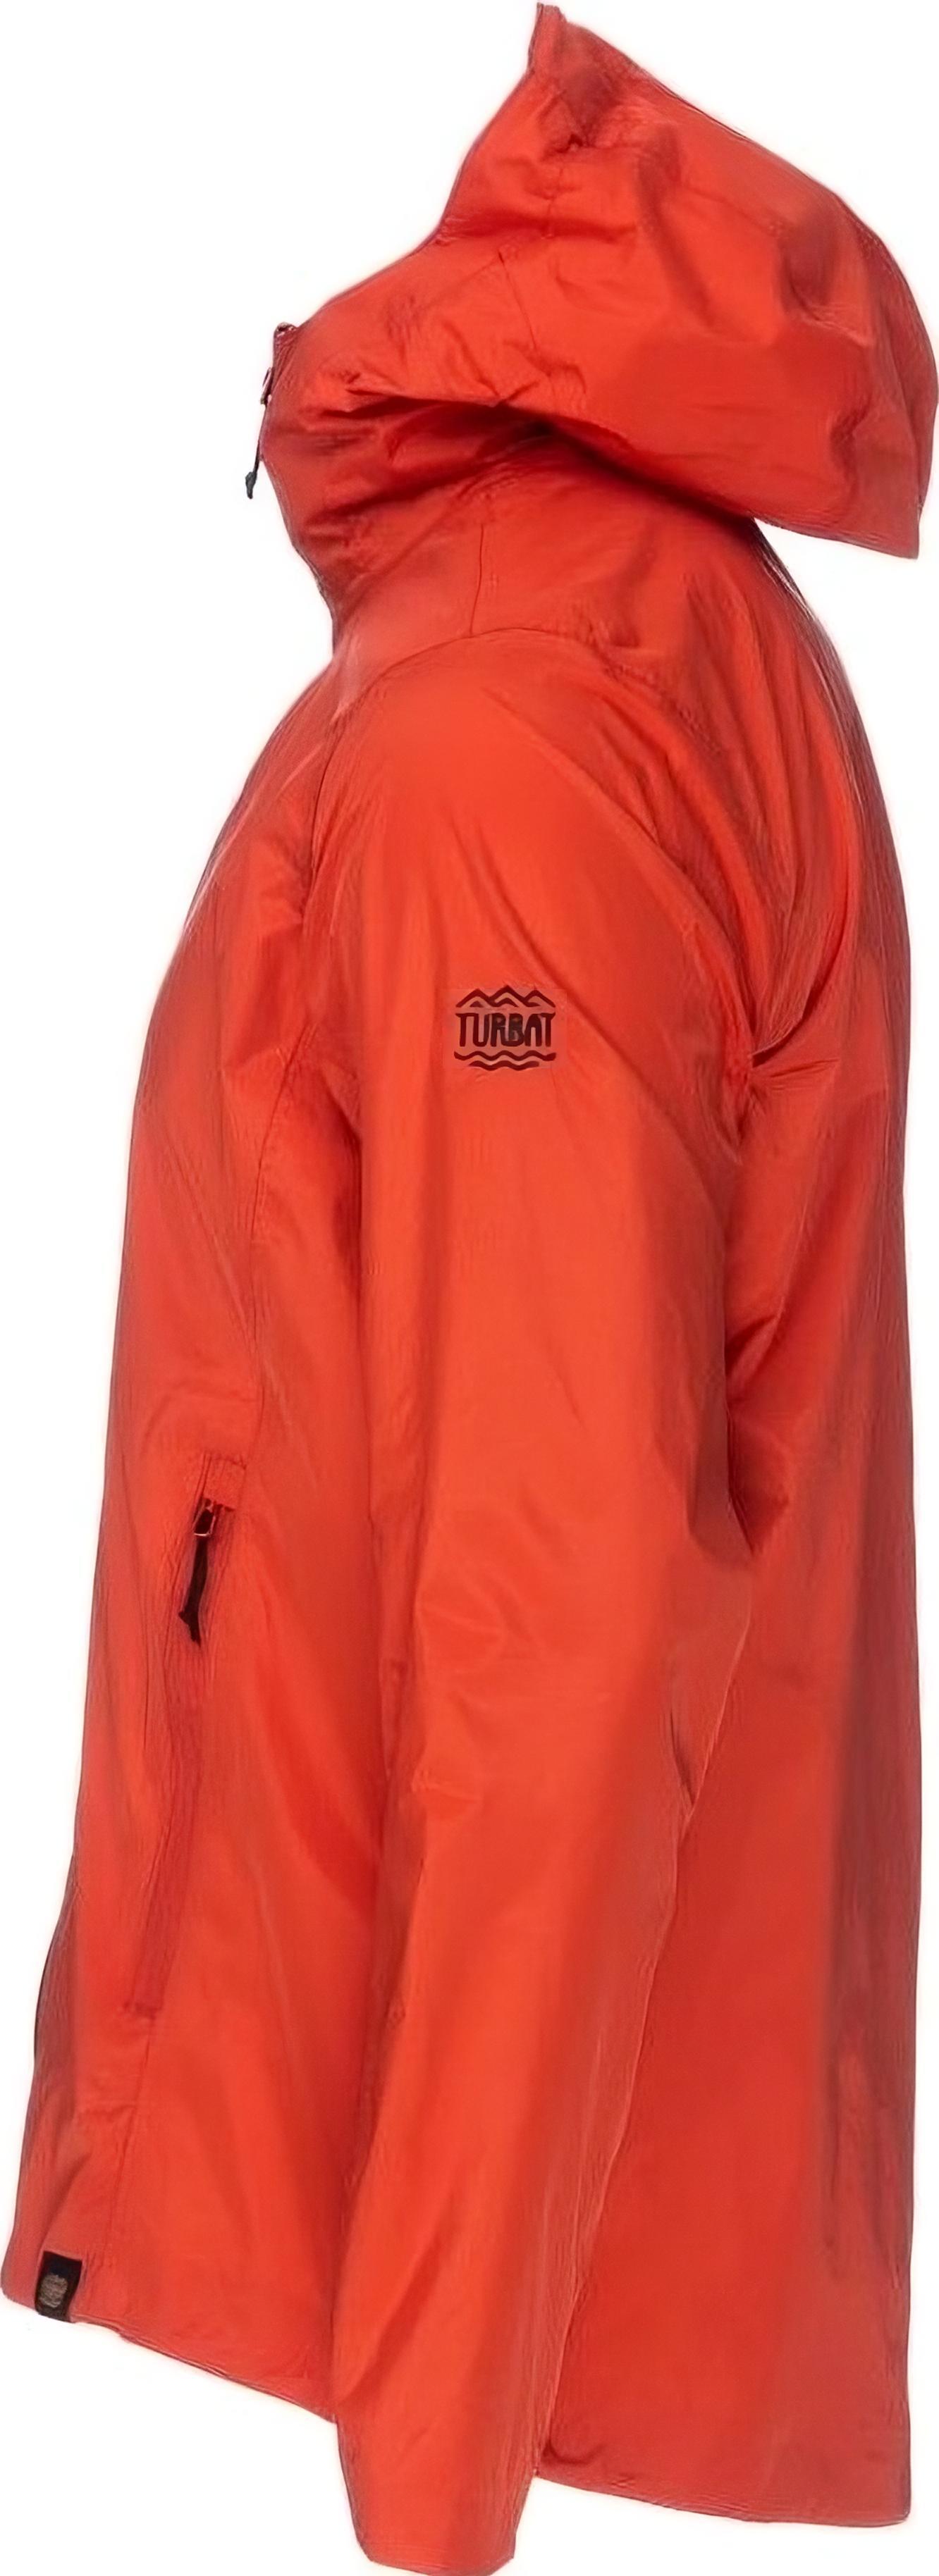 Куртка женская Turbat Isla Wmn orange red S красный фото 2